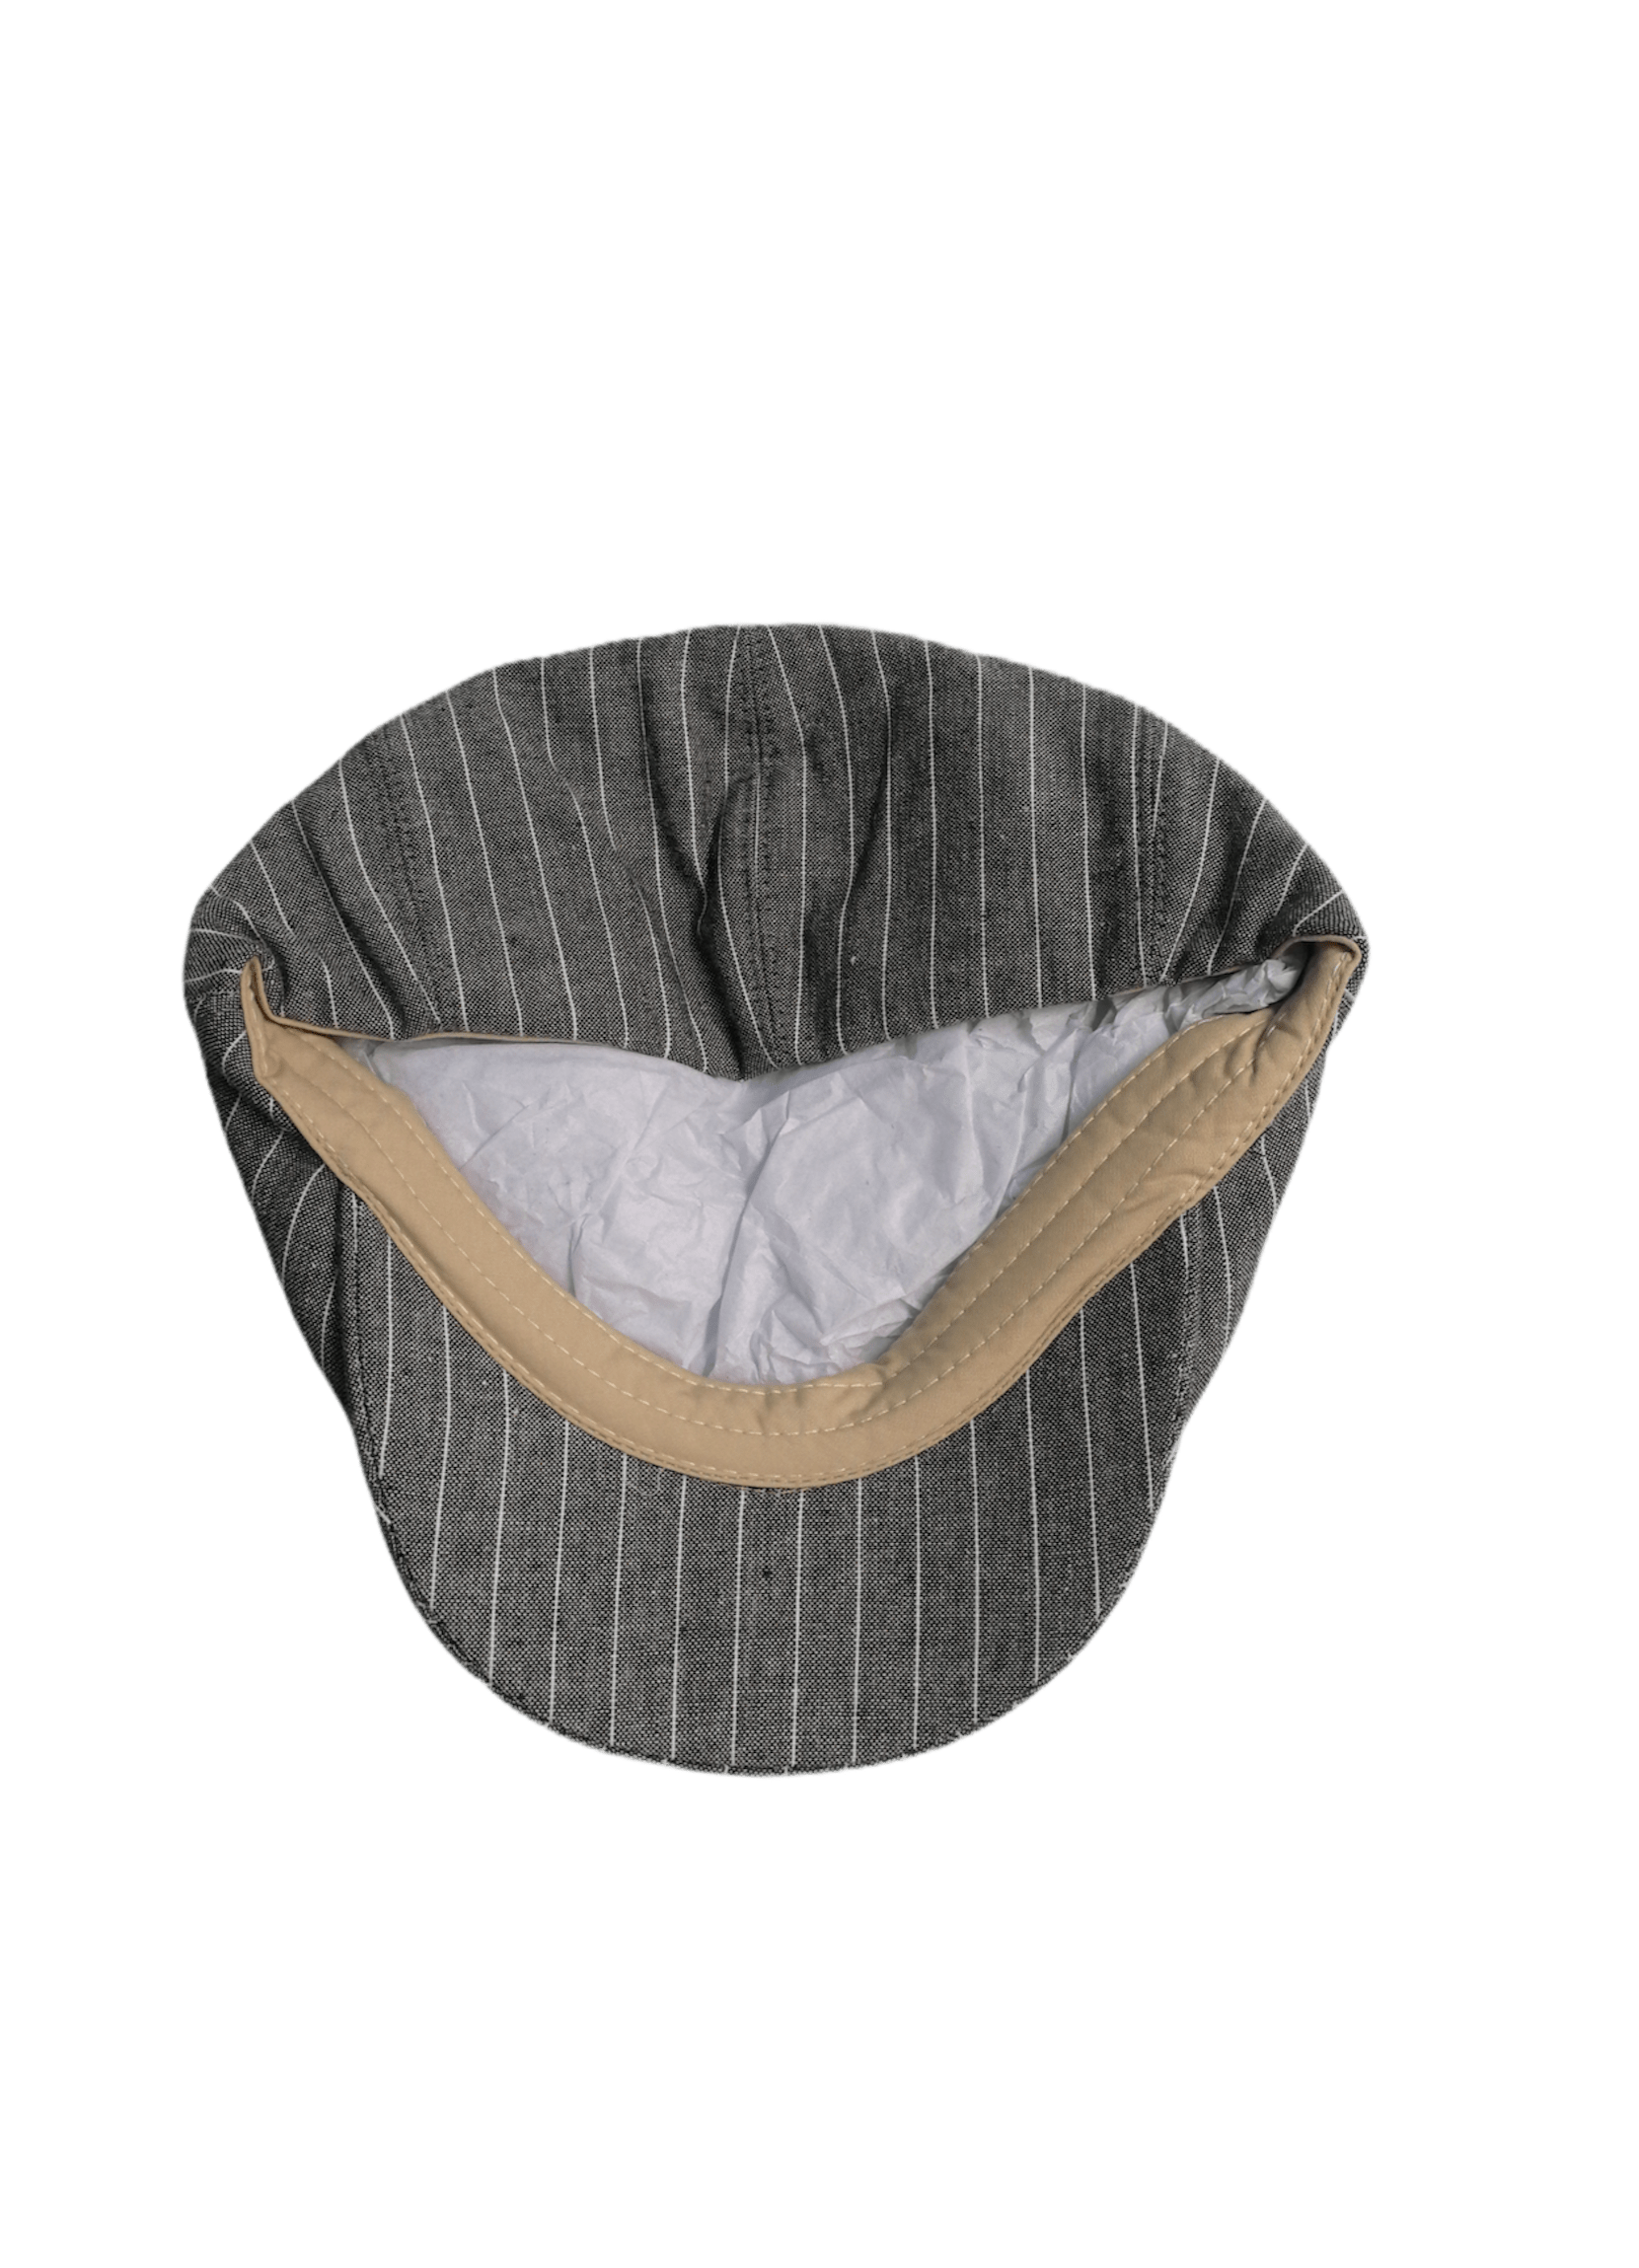 Béret homme laine, Casquette plate motif rayure (x6) 4,20€/unité | Grossiste-pro